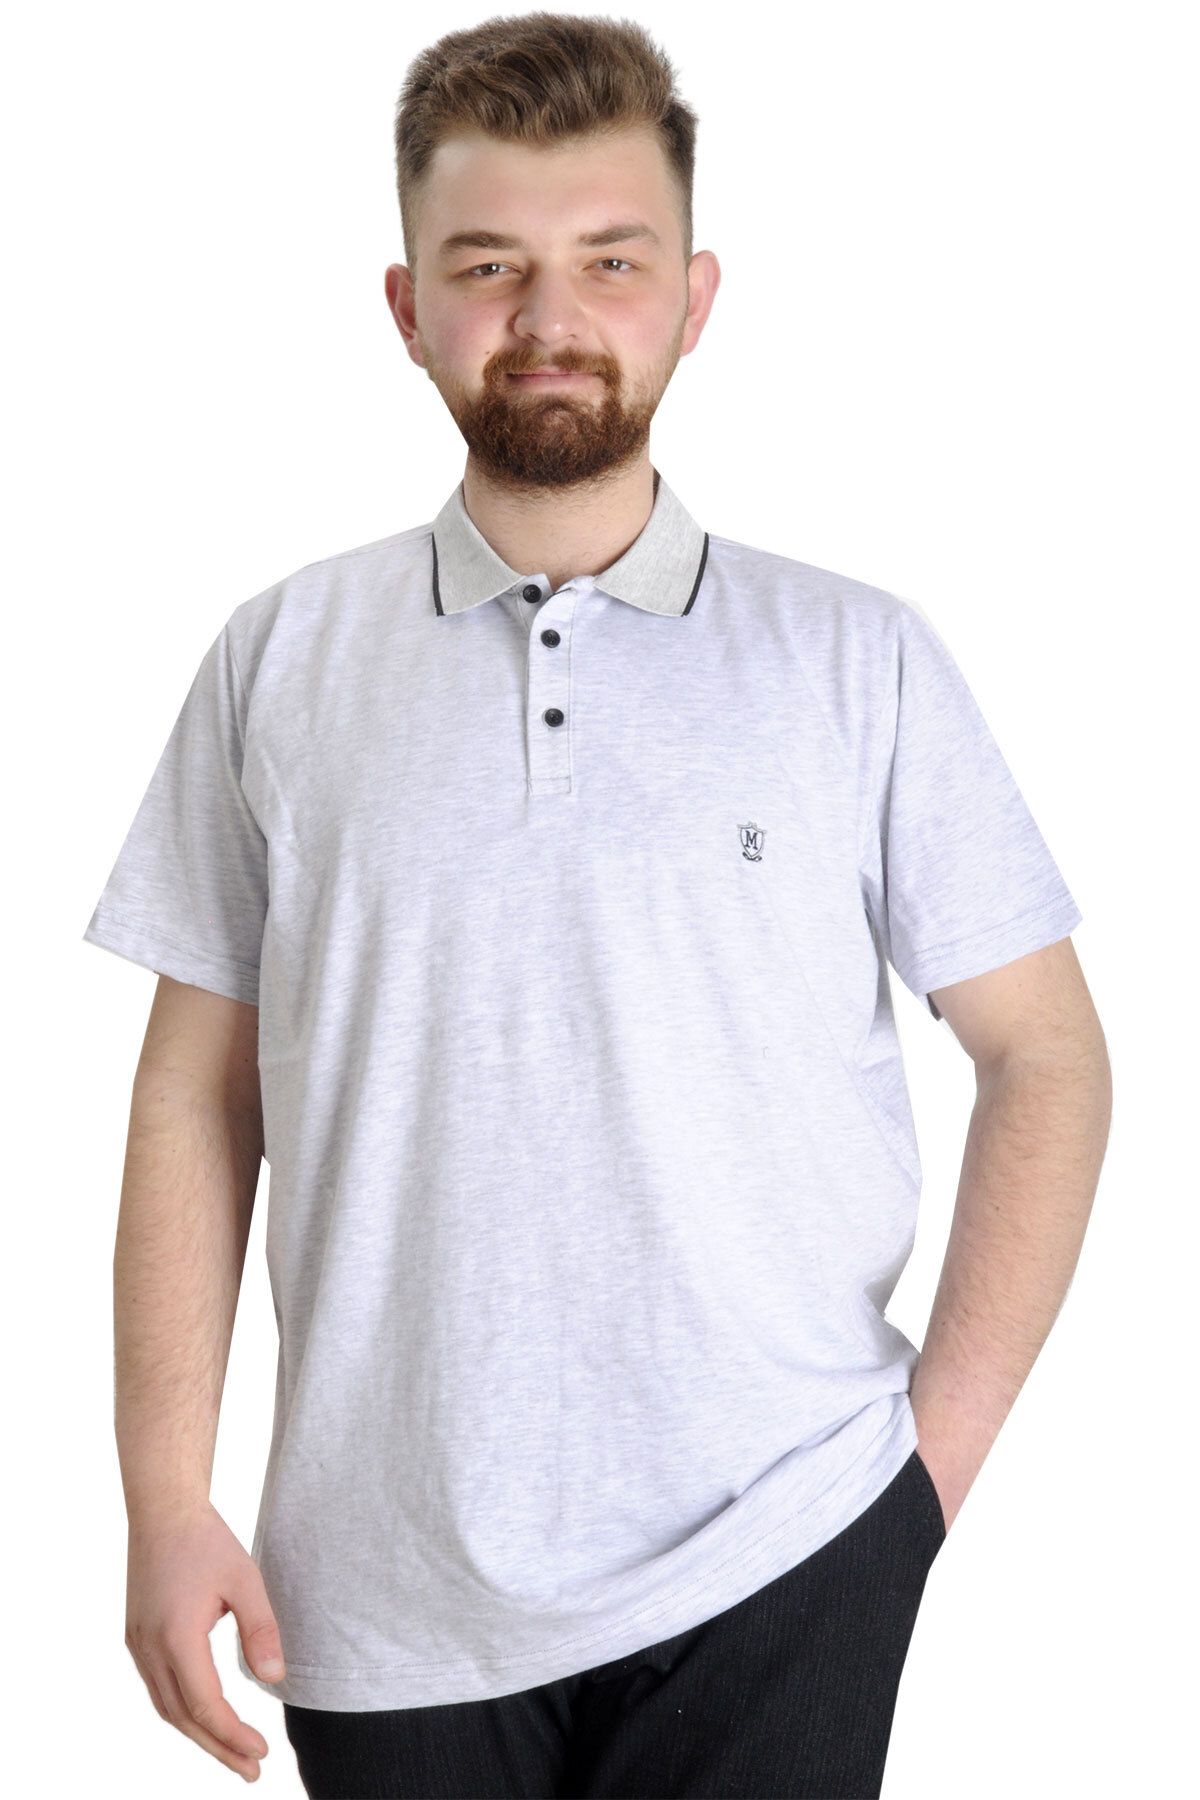 Modexl Mode XL Büyük Beden T shirt Polo Likralı Süprem Nakış 21554 Grimelanj